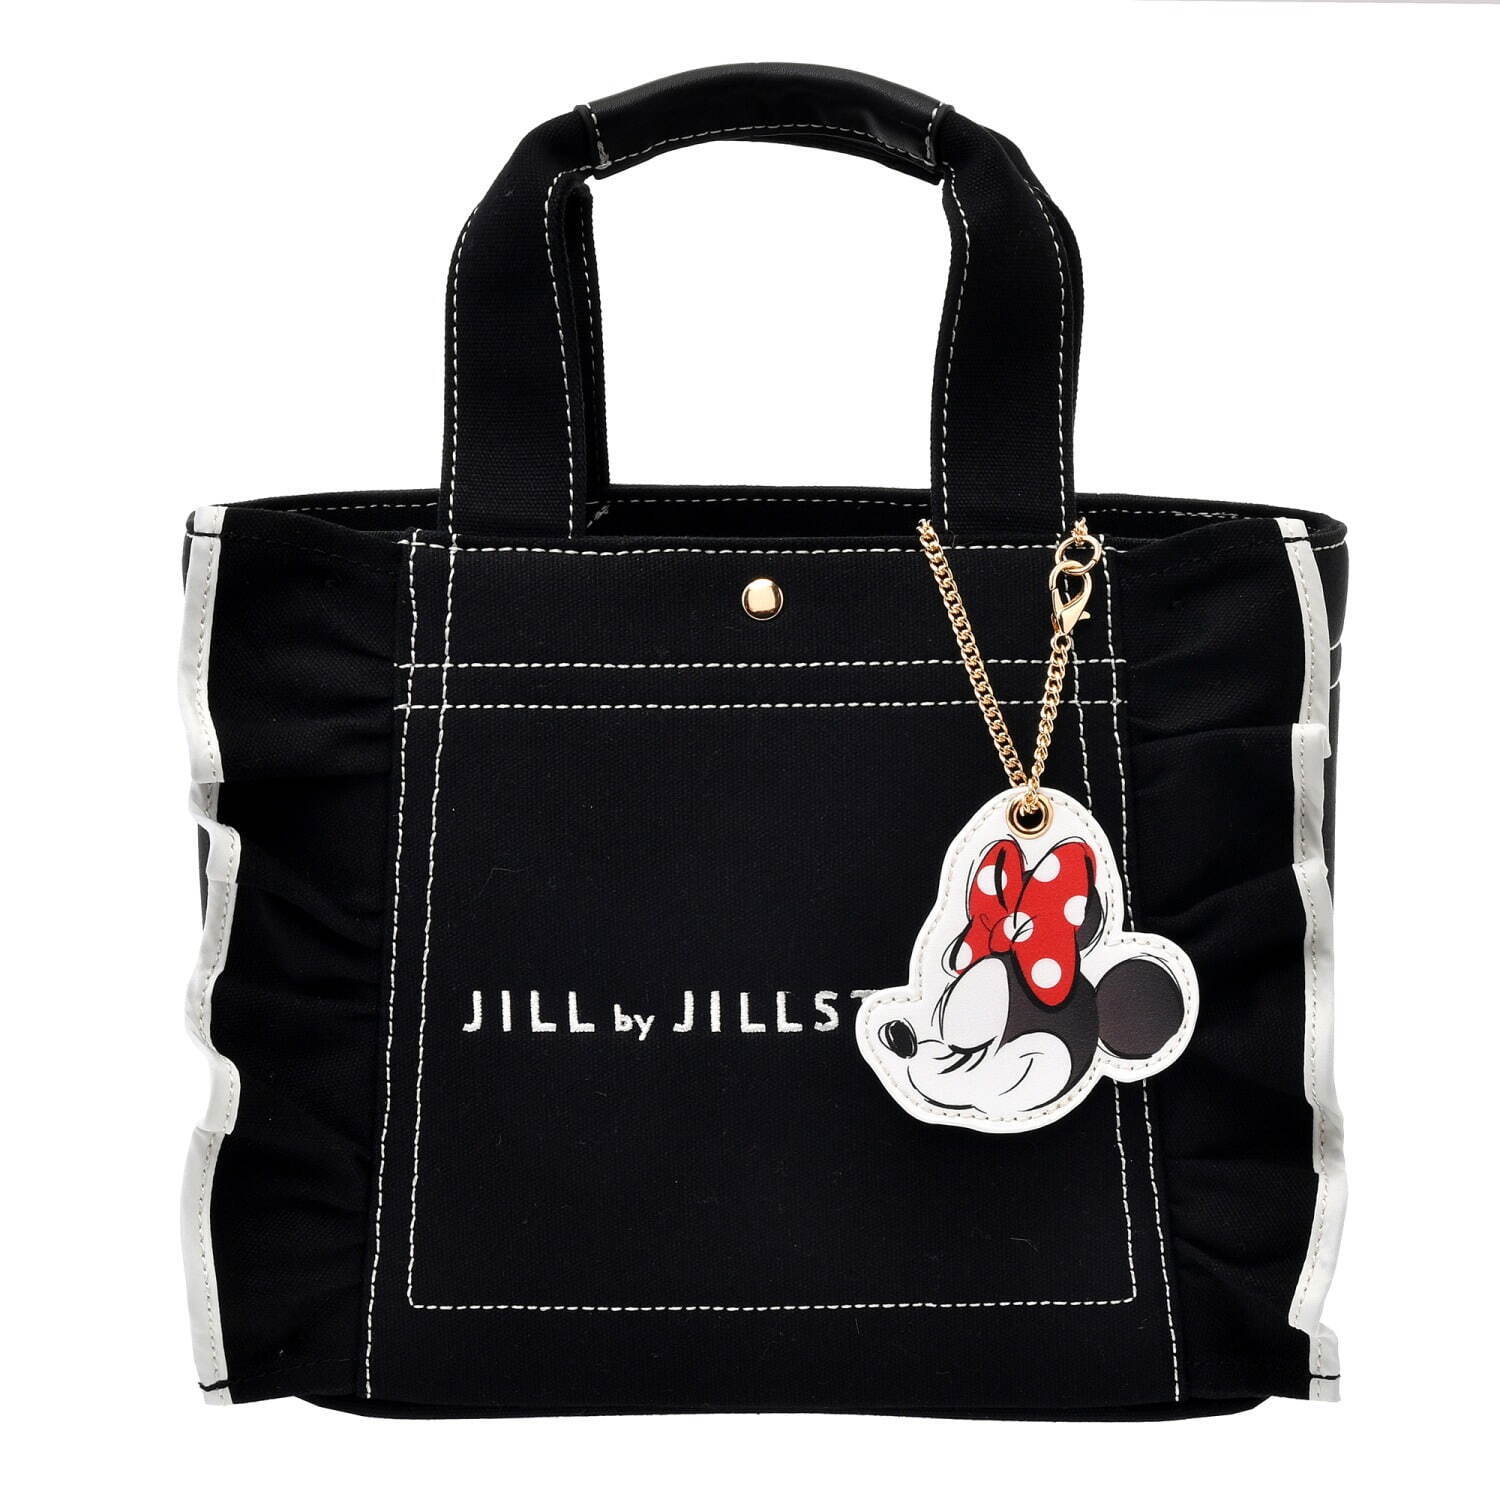 ジル by ジルスチュアート人気バッグが「ミニー」デザインに、リボン 